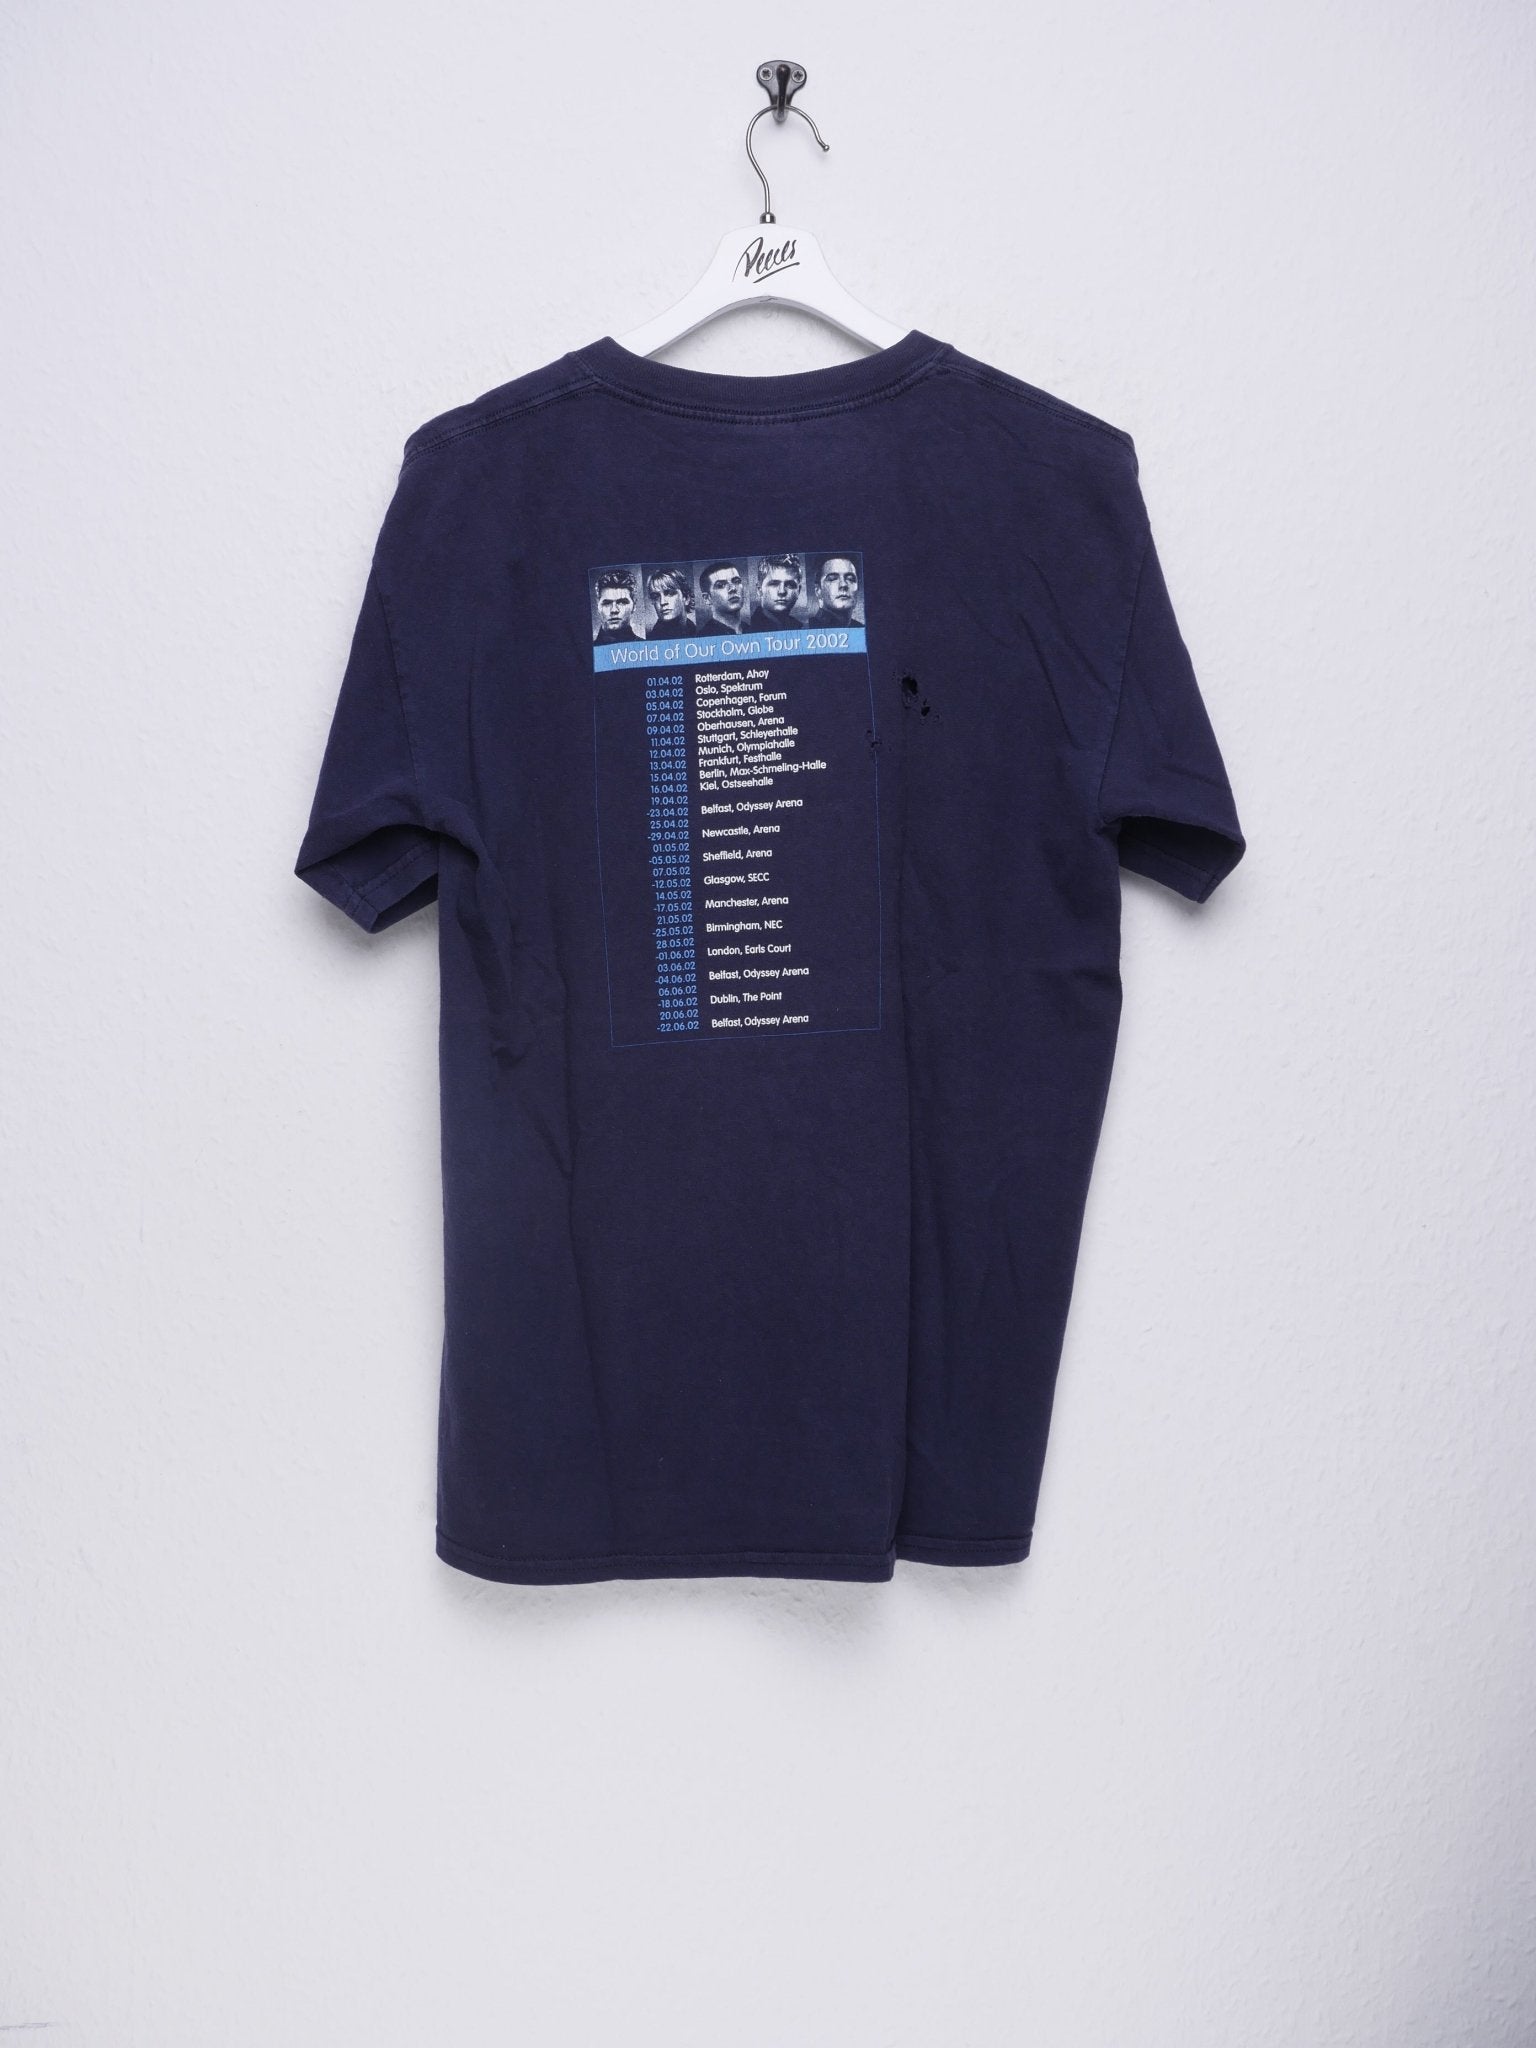 gildan Westlife 2002 Tour printed Graphic navy Shirt - Peeces